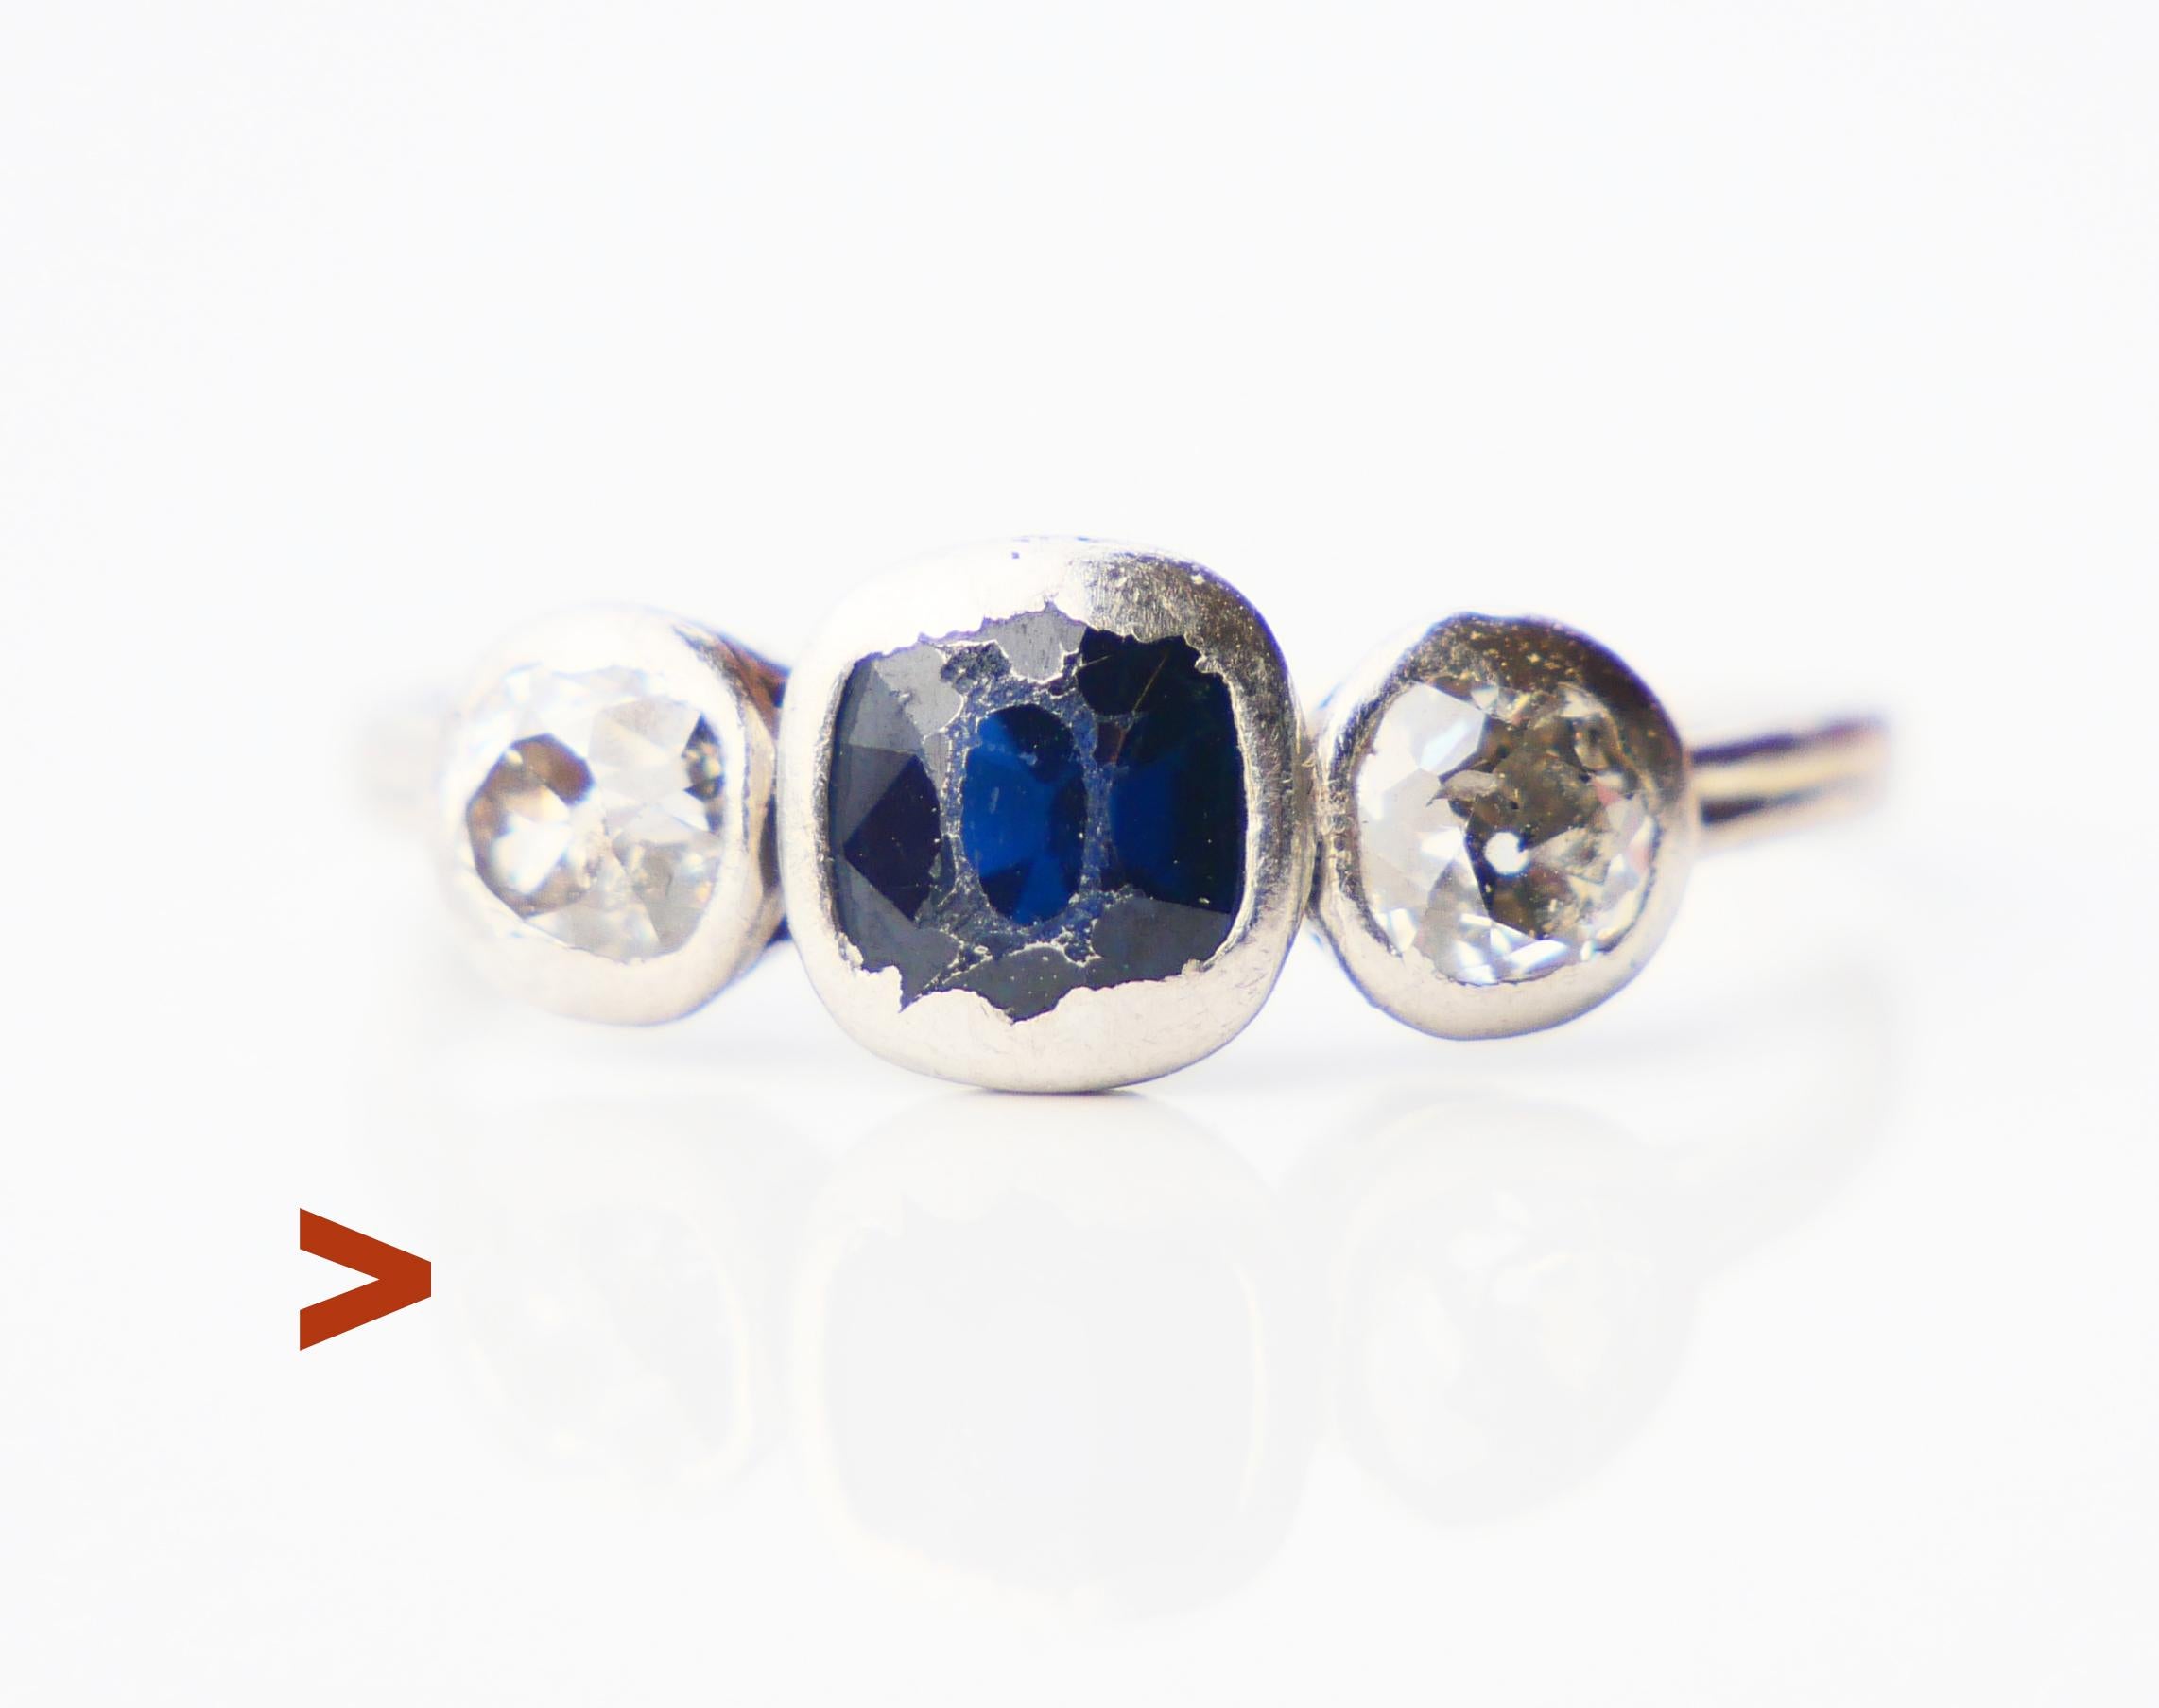 Alter Ring von Hand - hergestellt in Weiß und Blau in der Werkstatt von A. Tillander, einer berühmten finnischen Schmuckmarke, die einst im kaiserlichen Russland entstand und beim russischen Adel sehr beliebt war. Sie war sowohl in Russland als auch